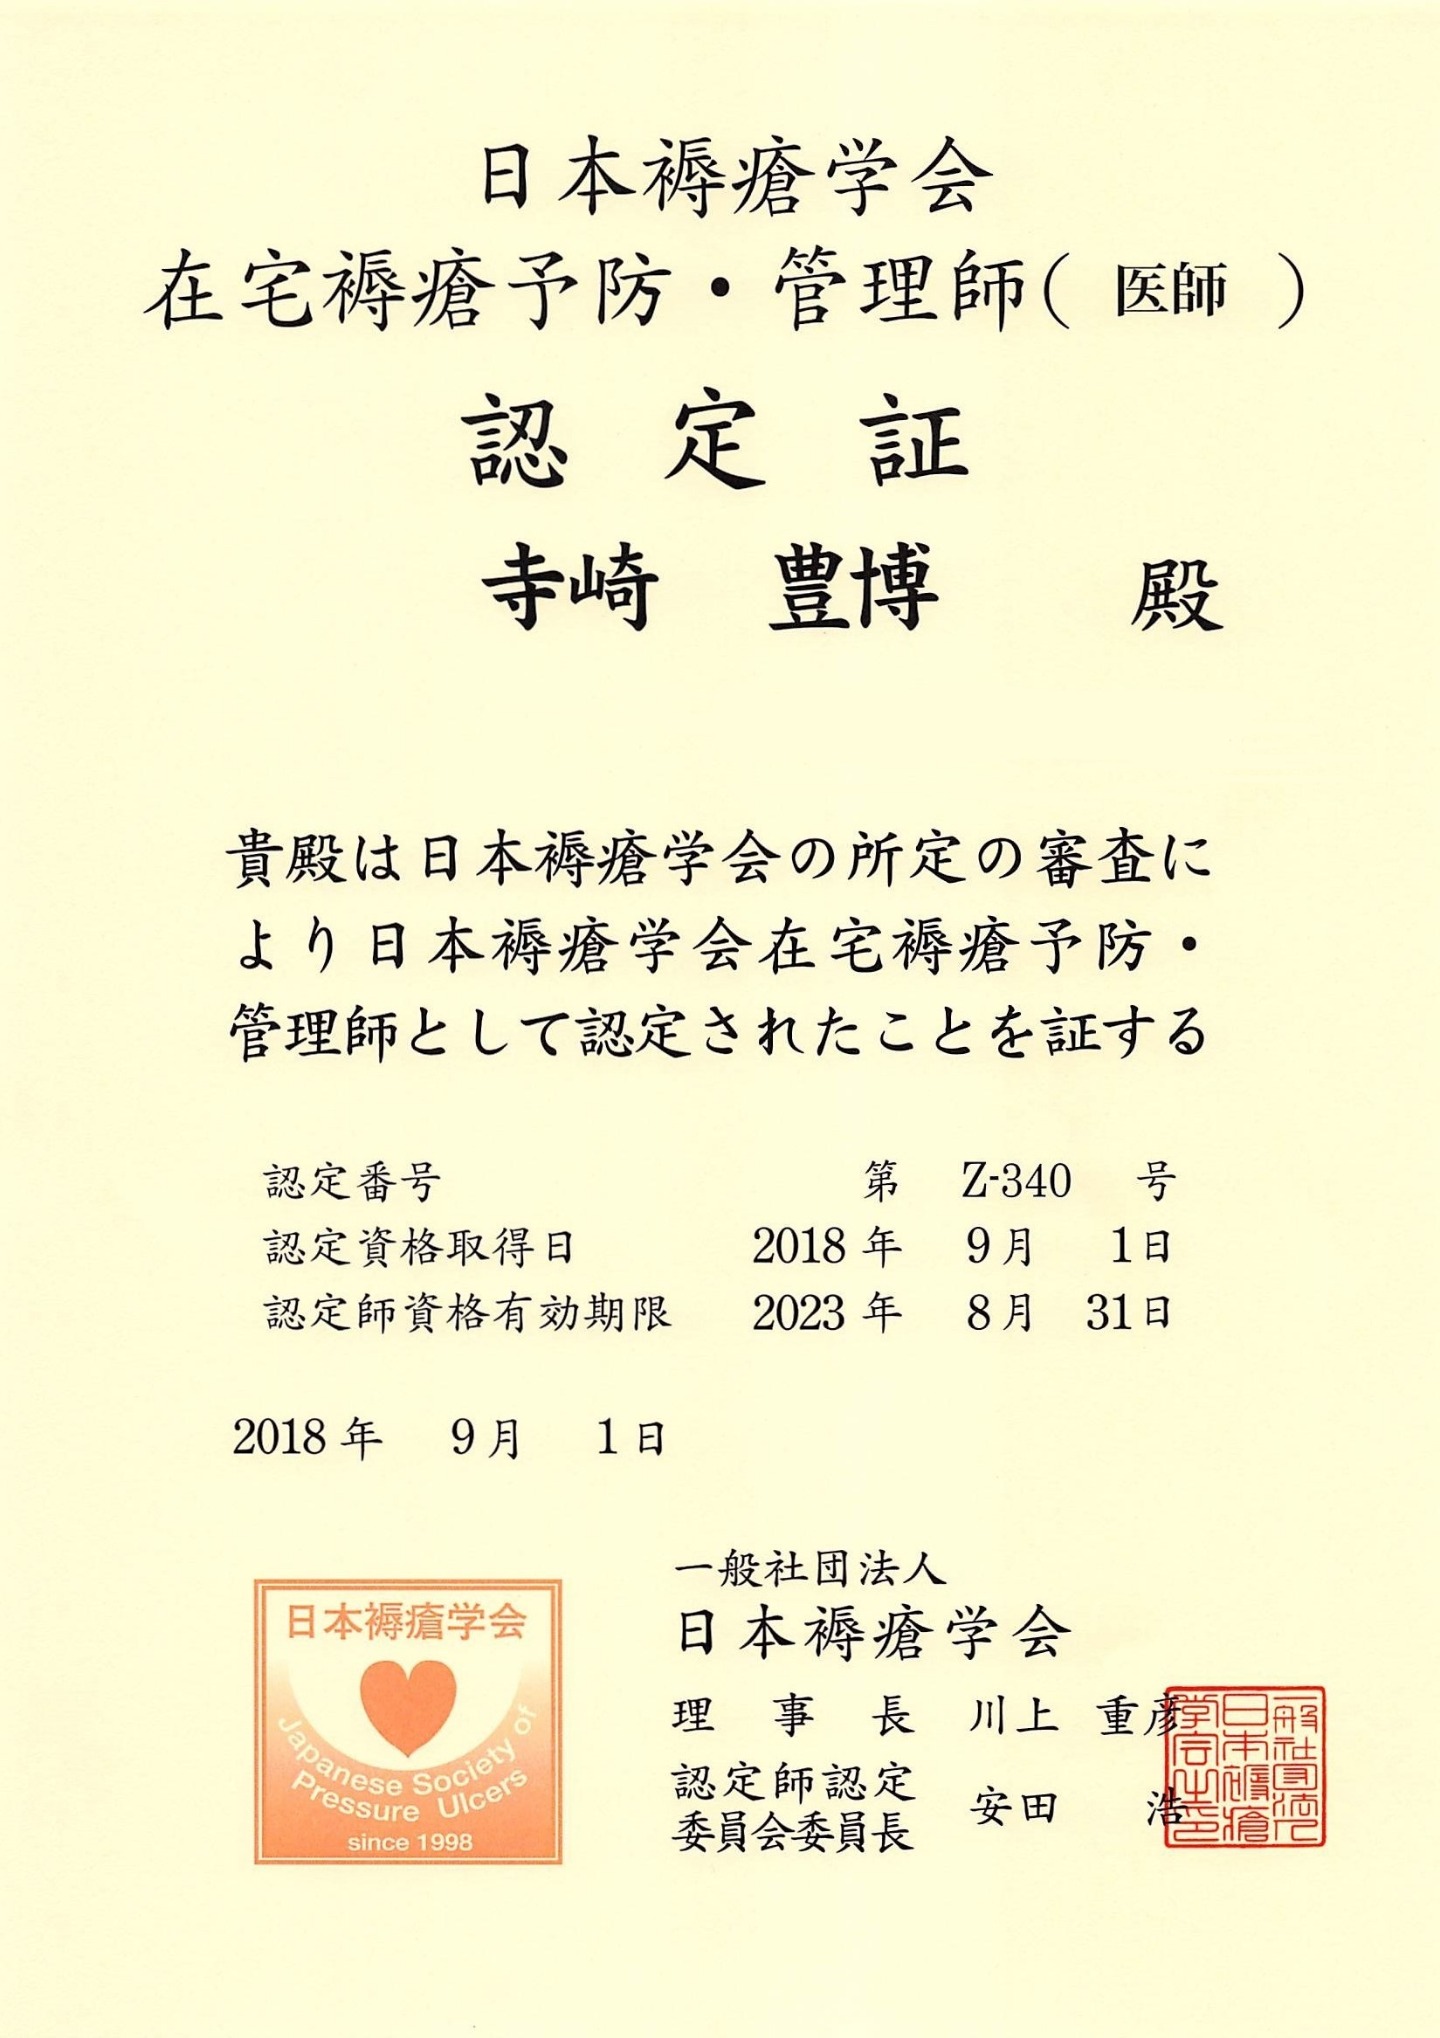 奈良県医師会認定かかりつけ医認定証をいただきました。